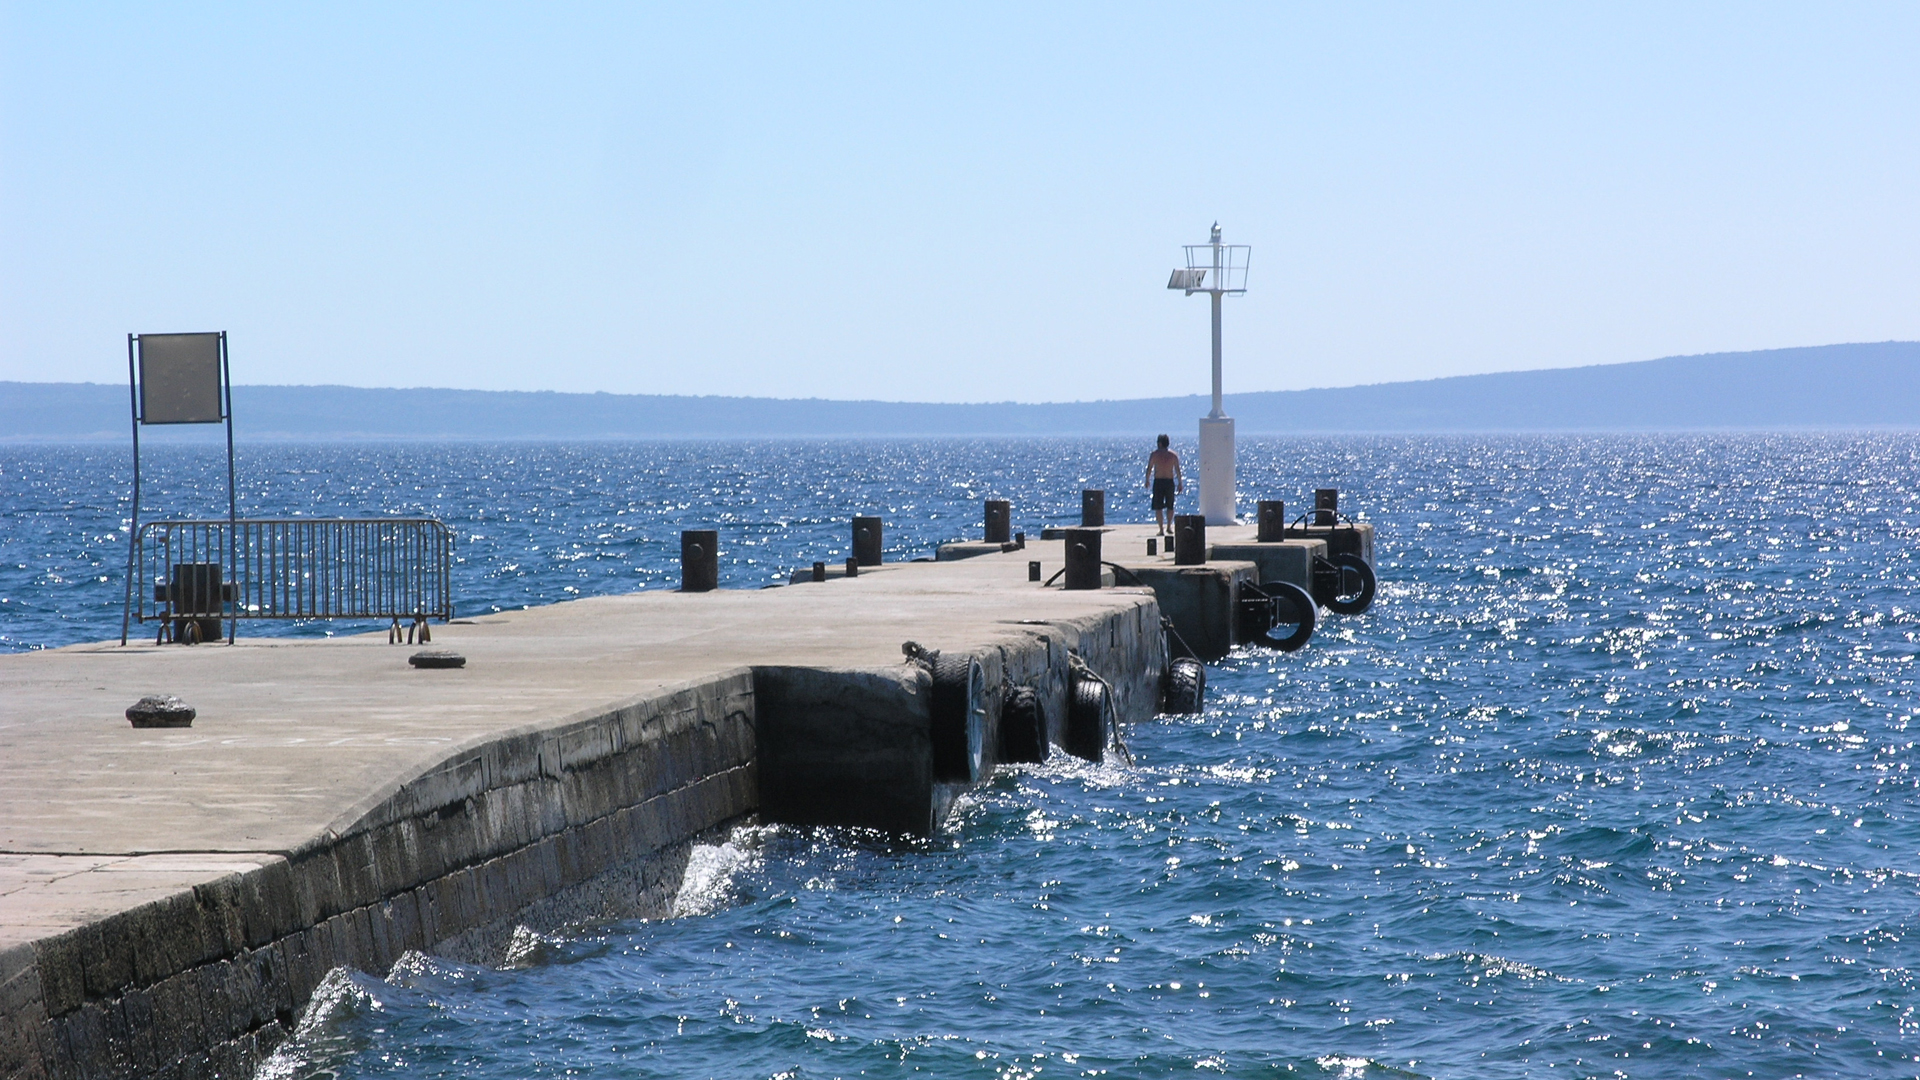 Fotostrecke Sommer Abbildung 20: Schiffsanlegestelle der Insel Silba in Kroatien